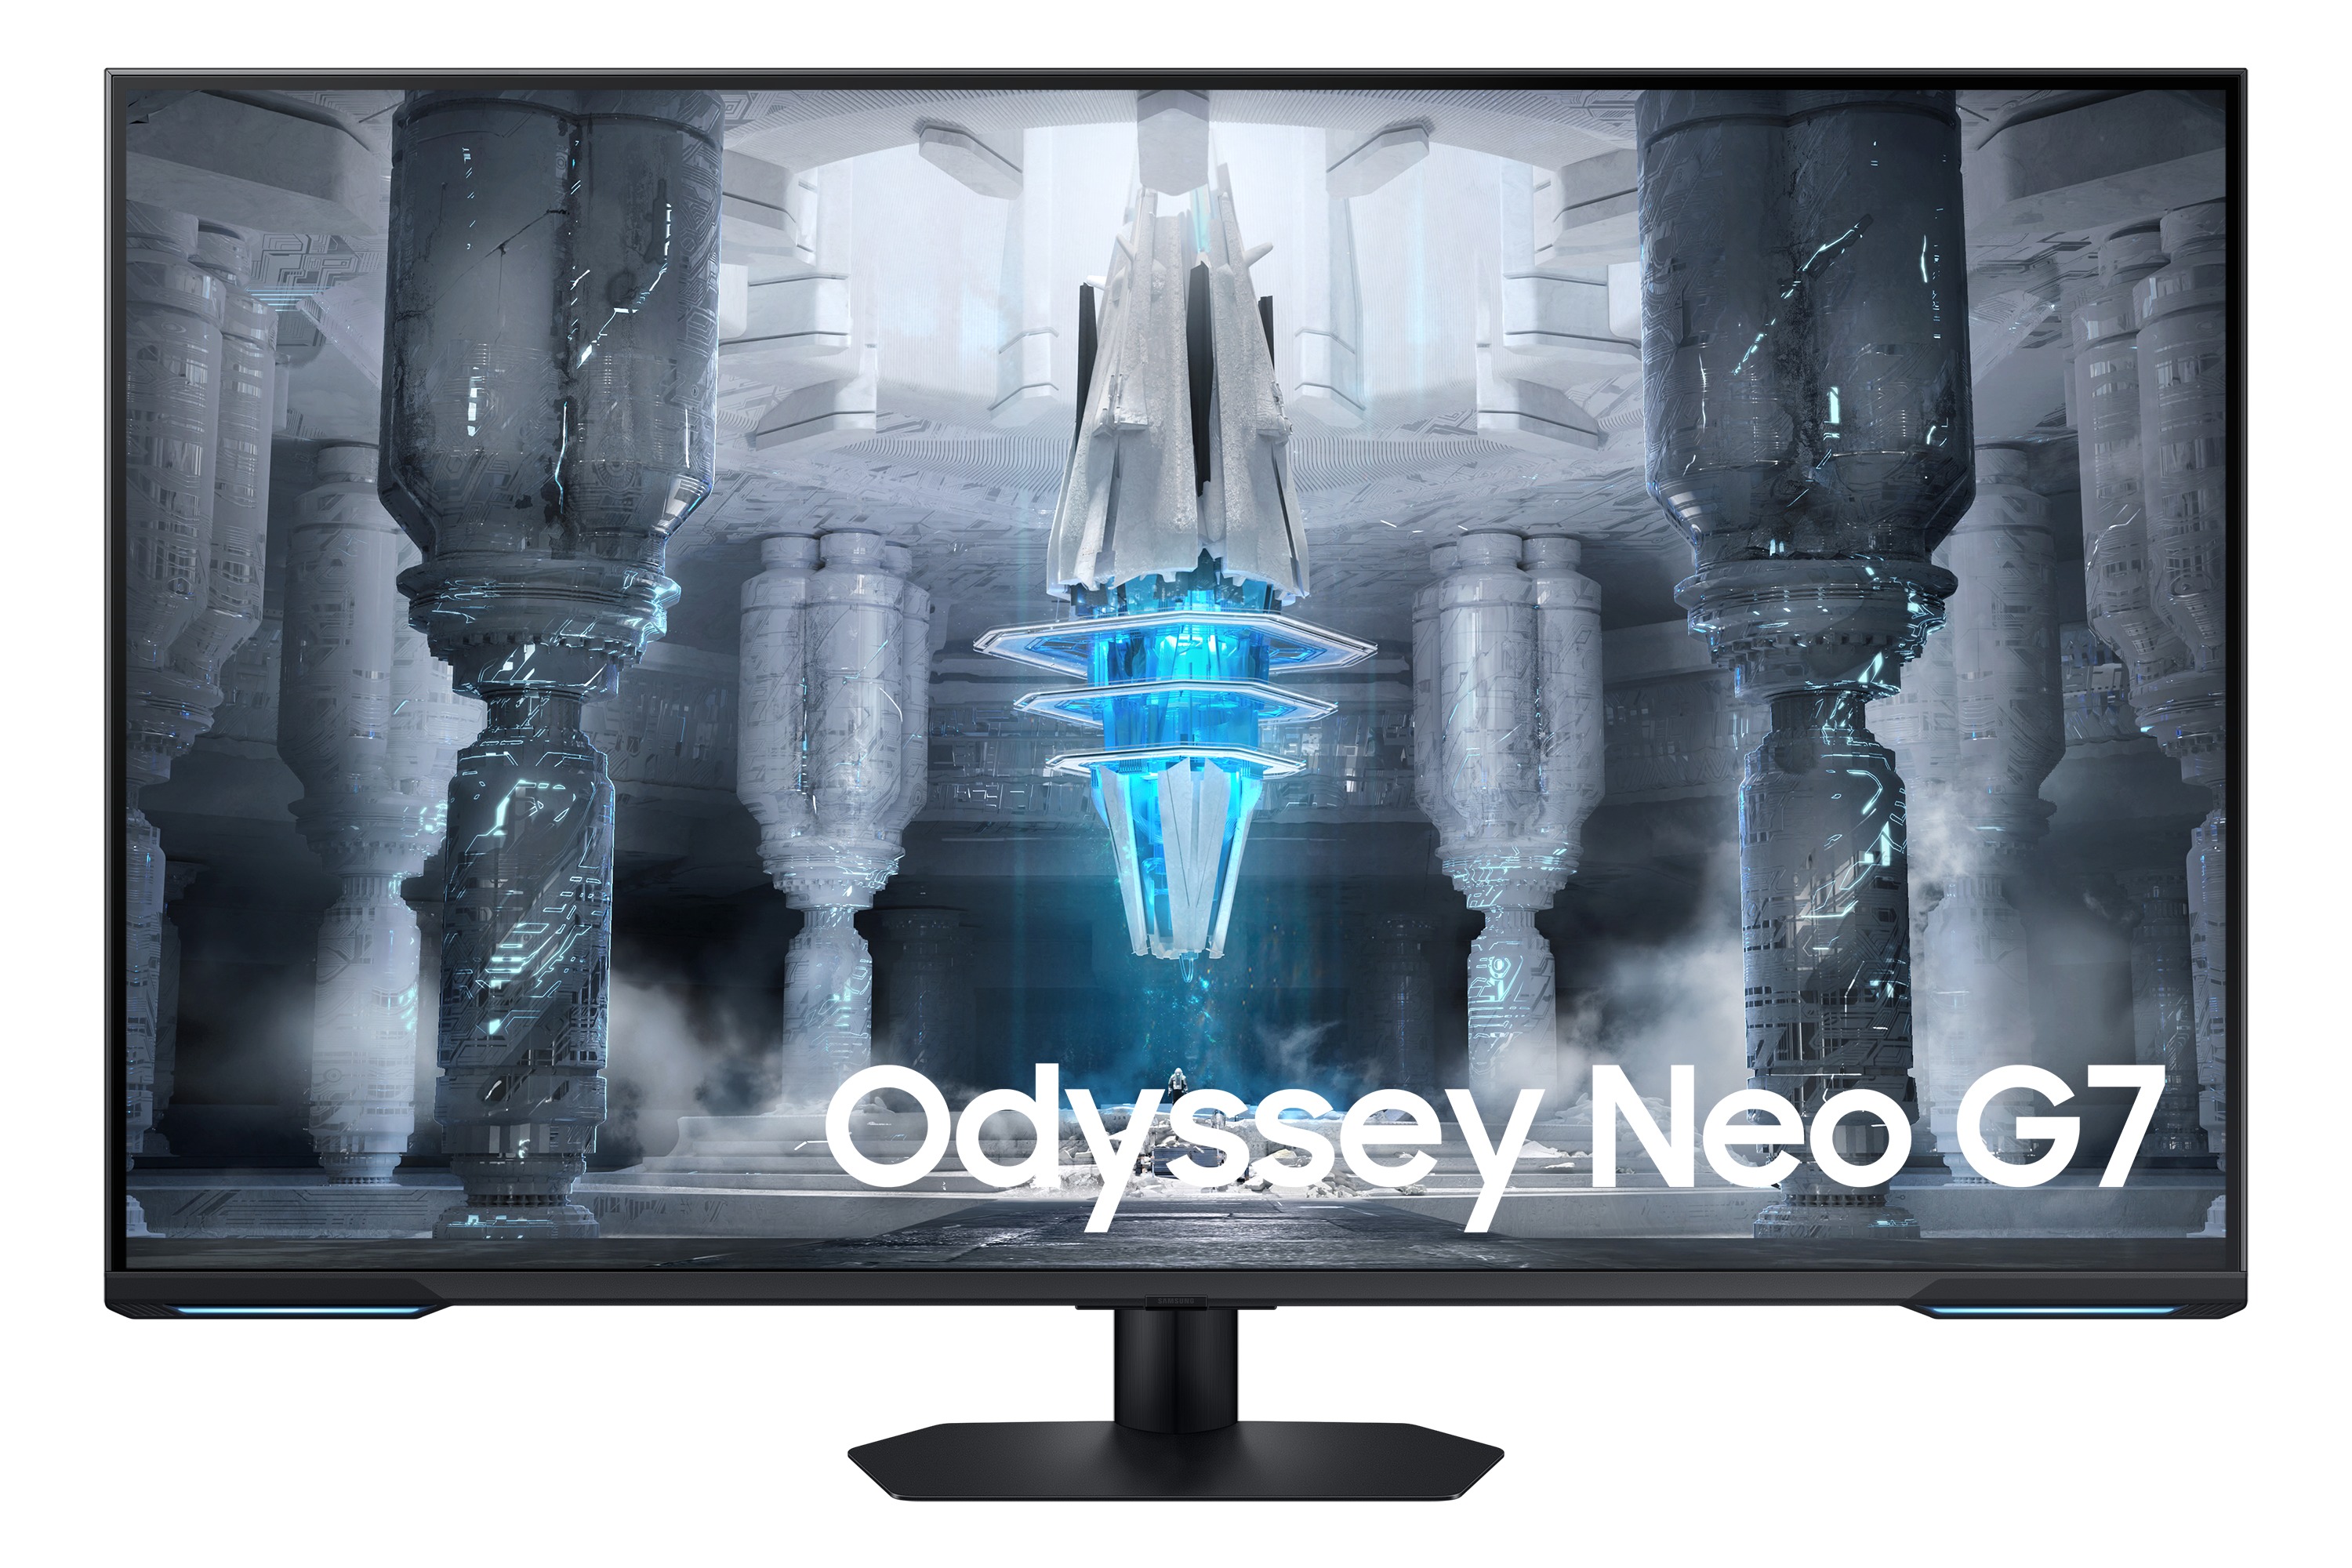 Samsung Odyssey Neo G7 S43CG700NU LED-monitor 109.2 cm (43 inch) Energielabel G (A G) 3840 x 2160 Pi